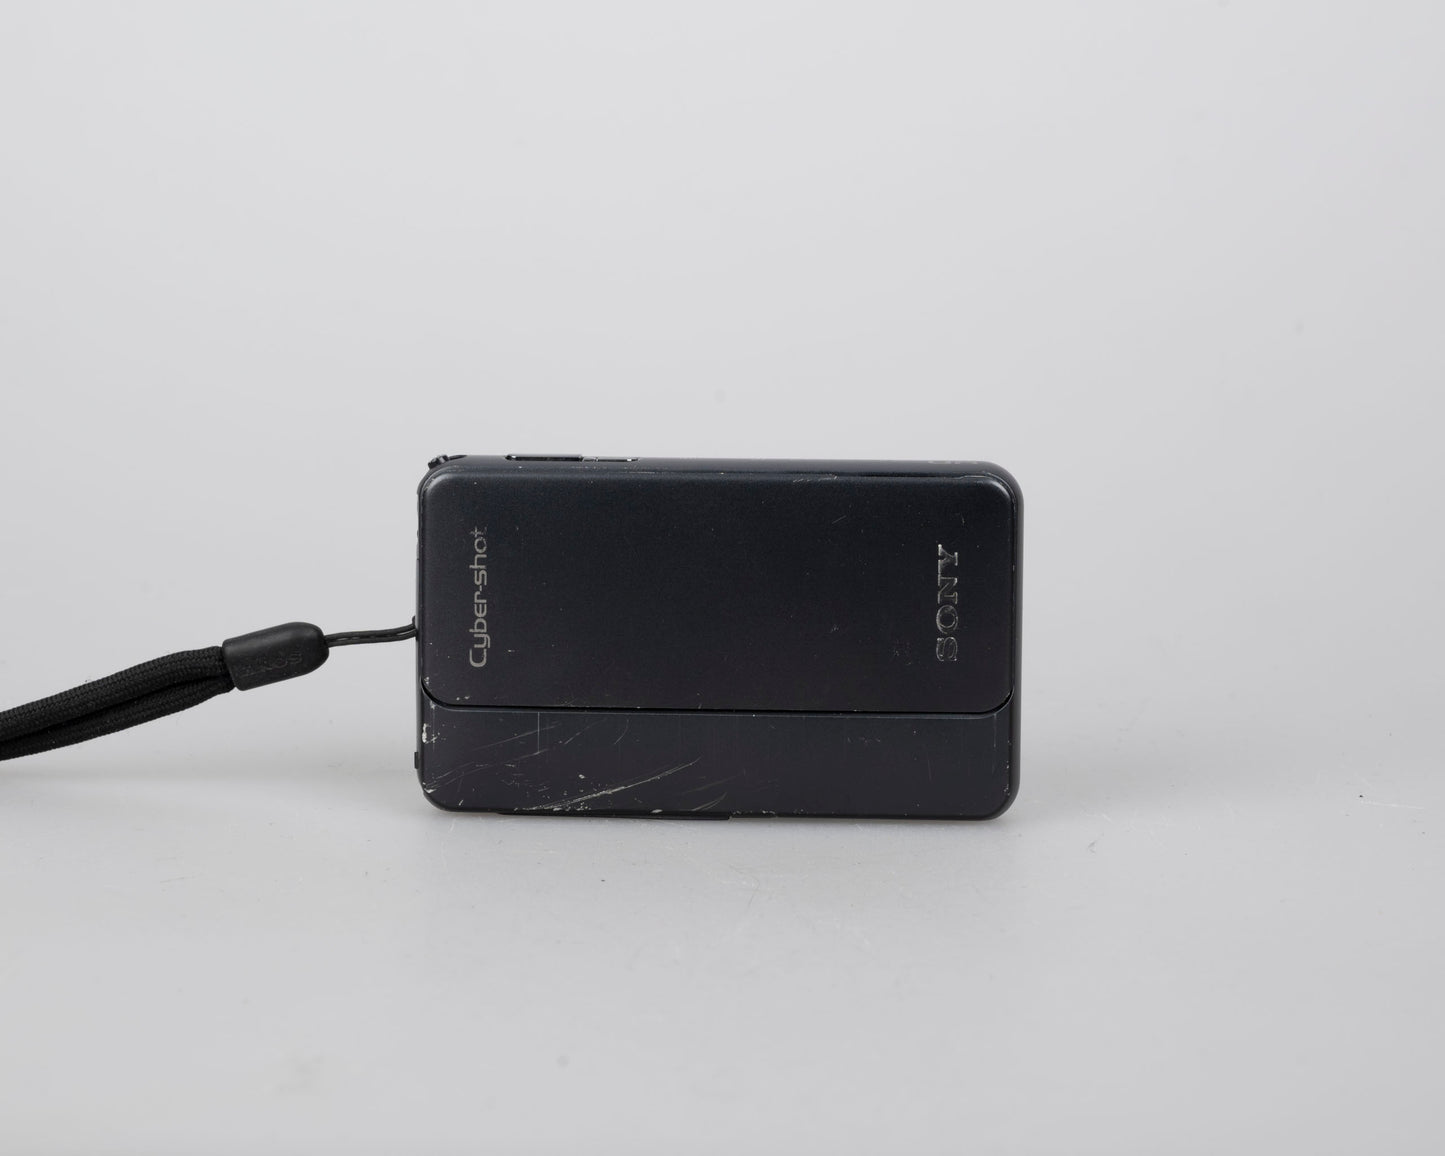 Appareil photo numérique Sony Cyber-Shot DSC-TX10 16 MP avec carte SD 2 Go + chargeur + batterie + étui